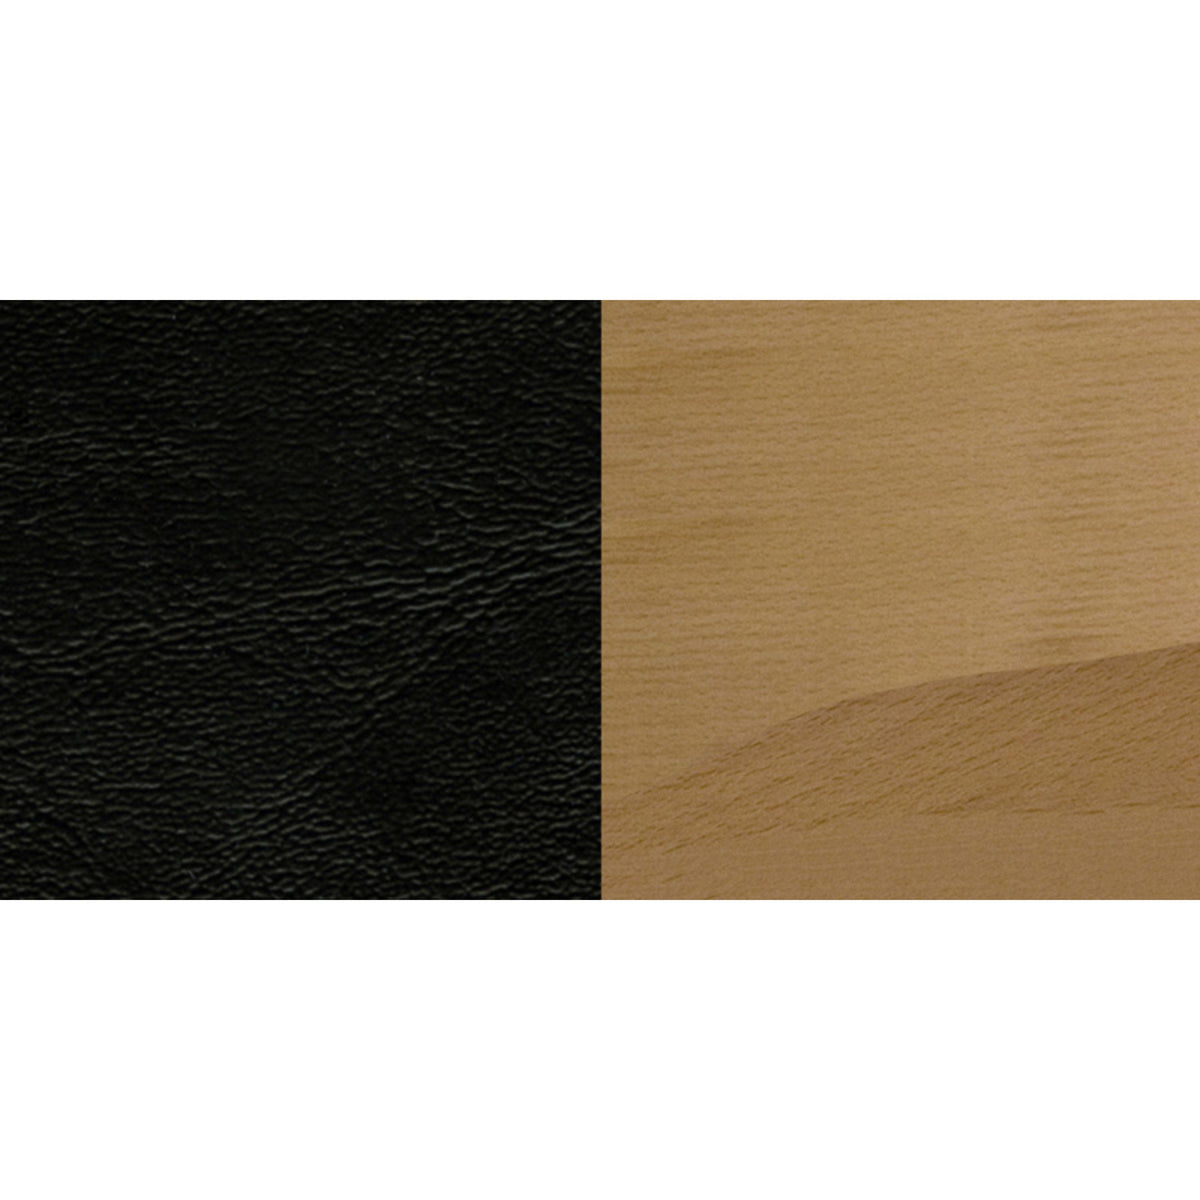 Black Vinyl Seat/Natural Wood Frame |#| Ladder Back Natural Wood Restaurant Barstool - Black Vinyl Seat